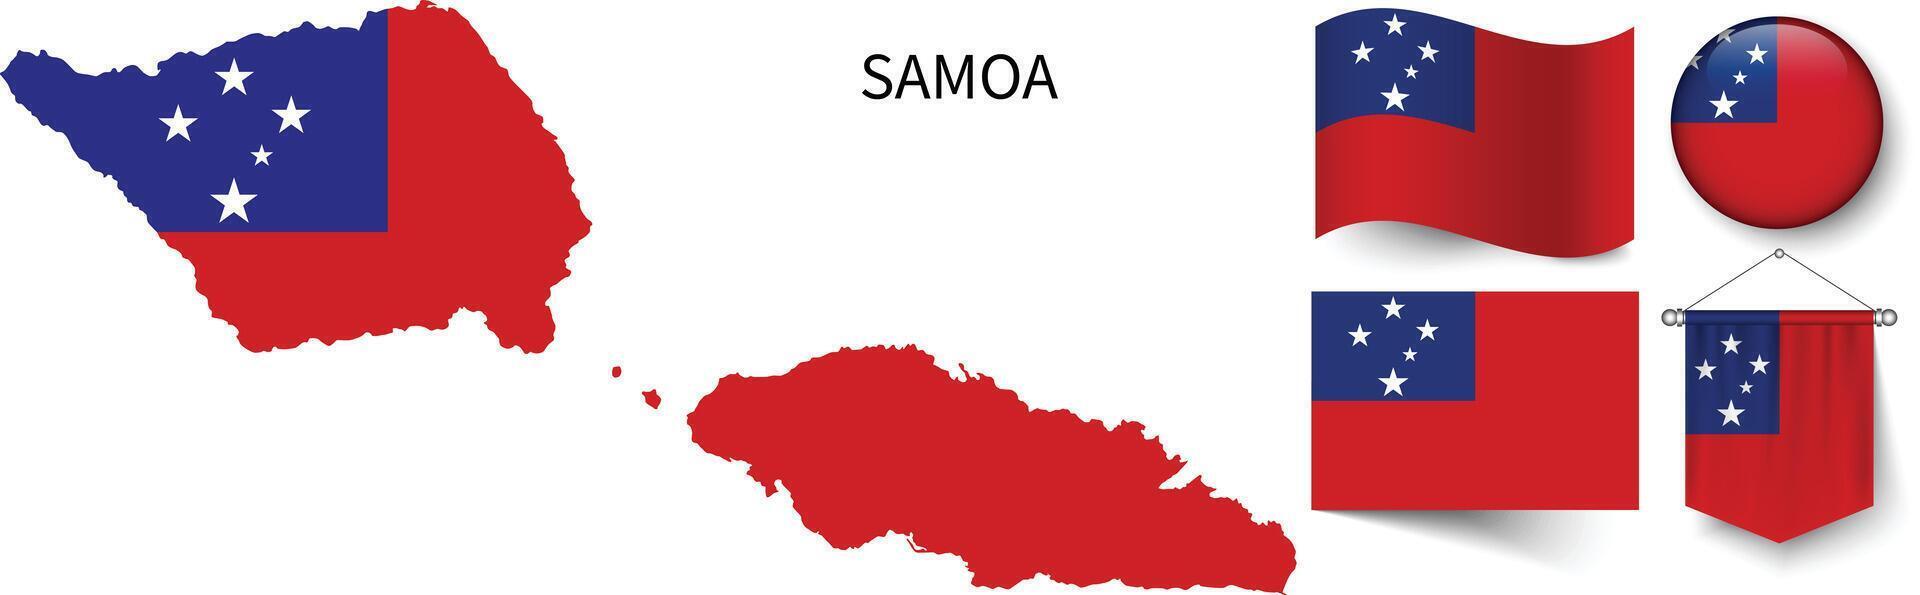 de divers patronen van de Samoa nationaal vlaggen en de kaart van Samoa's borders vector